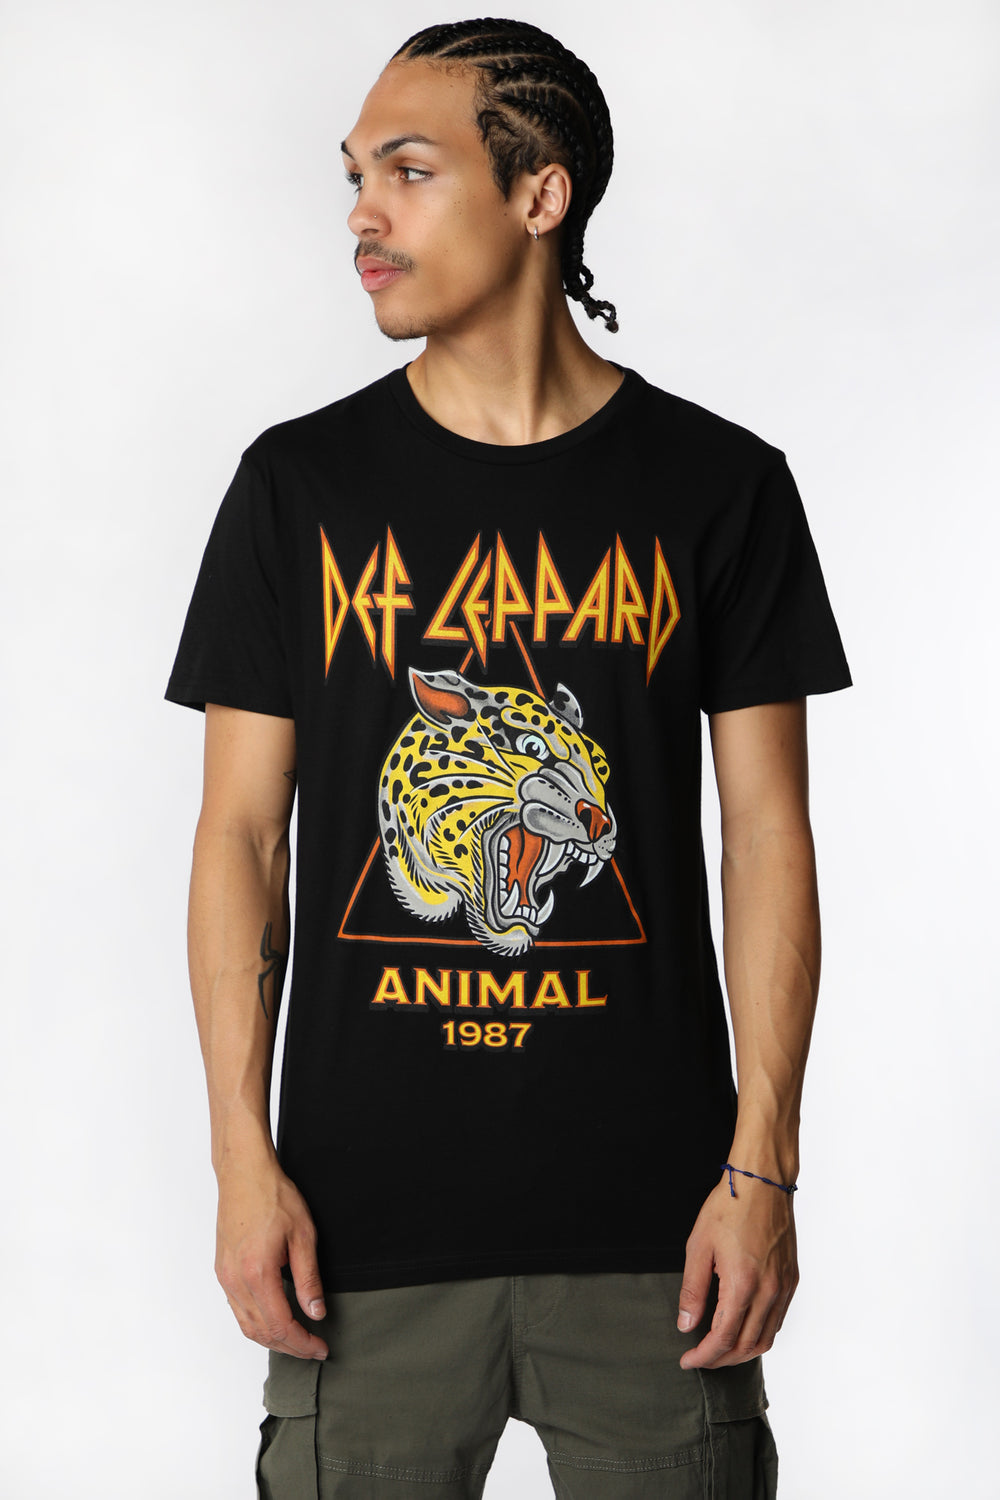 T-Shirt Imprimé Def Leppard Animal Homme T-Shirt Imprimé Def Leppard Animal Homme